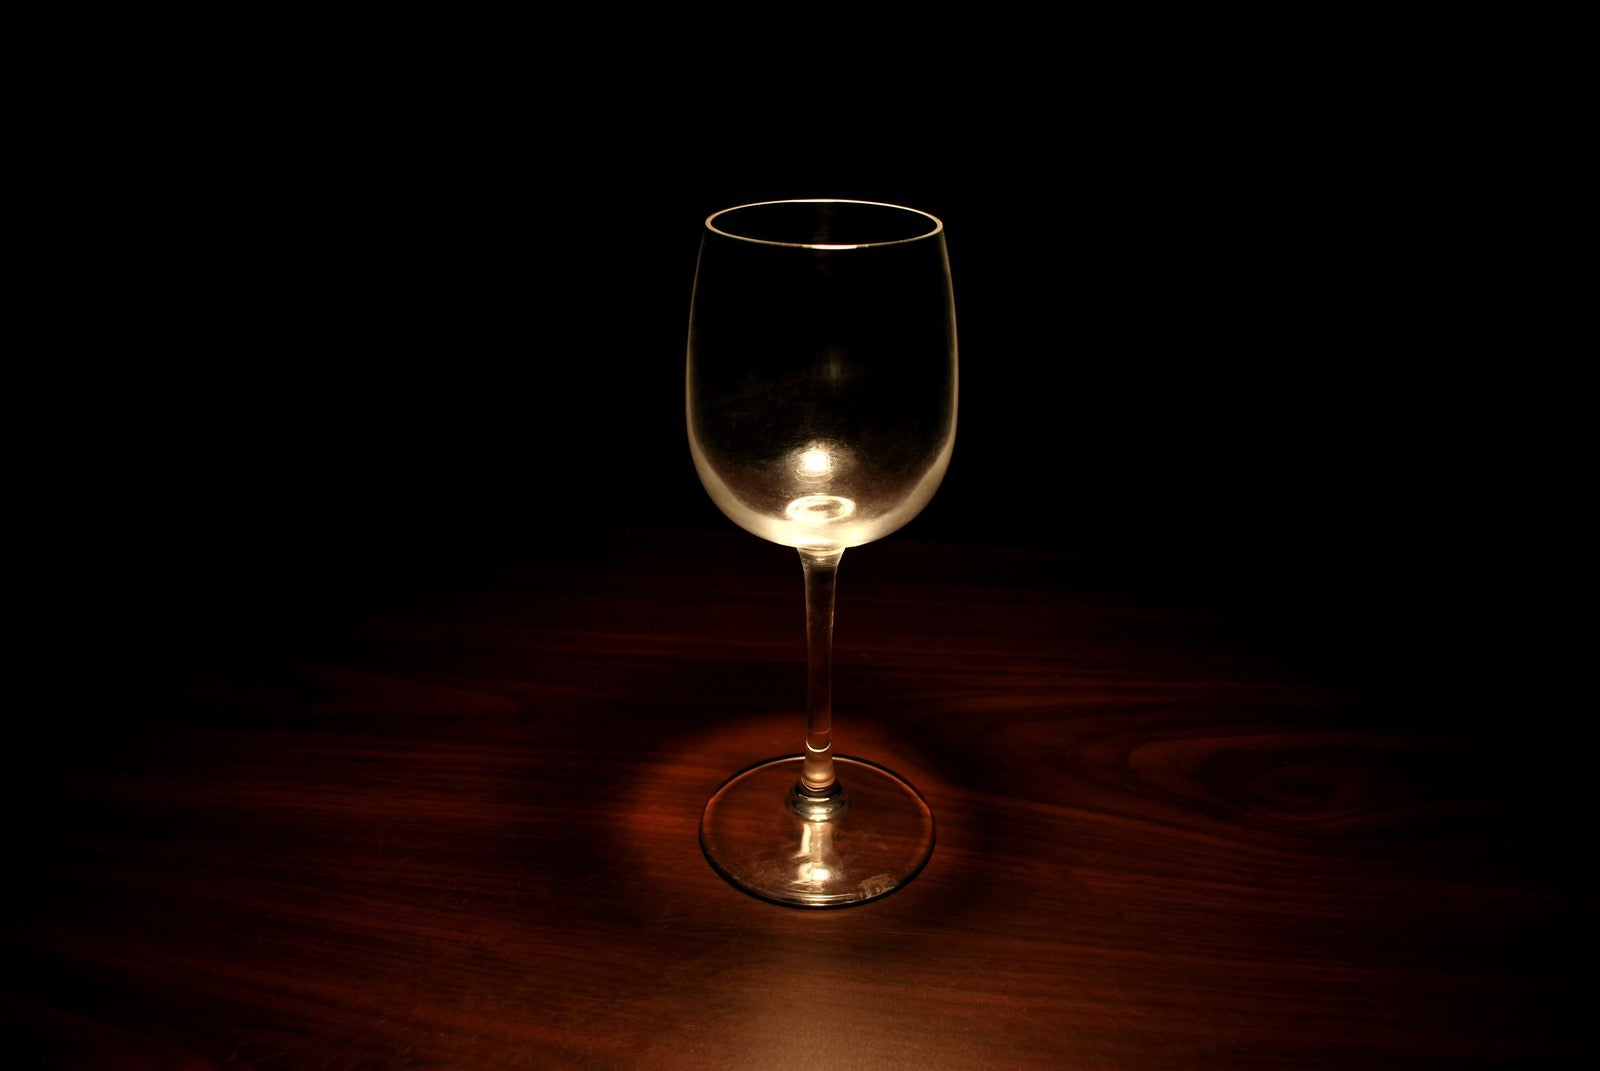 「暗闇の中のグラス」の写真